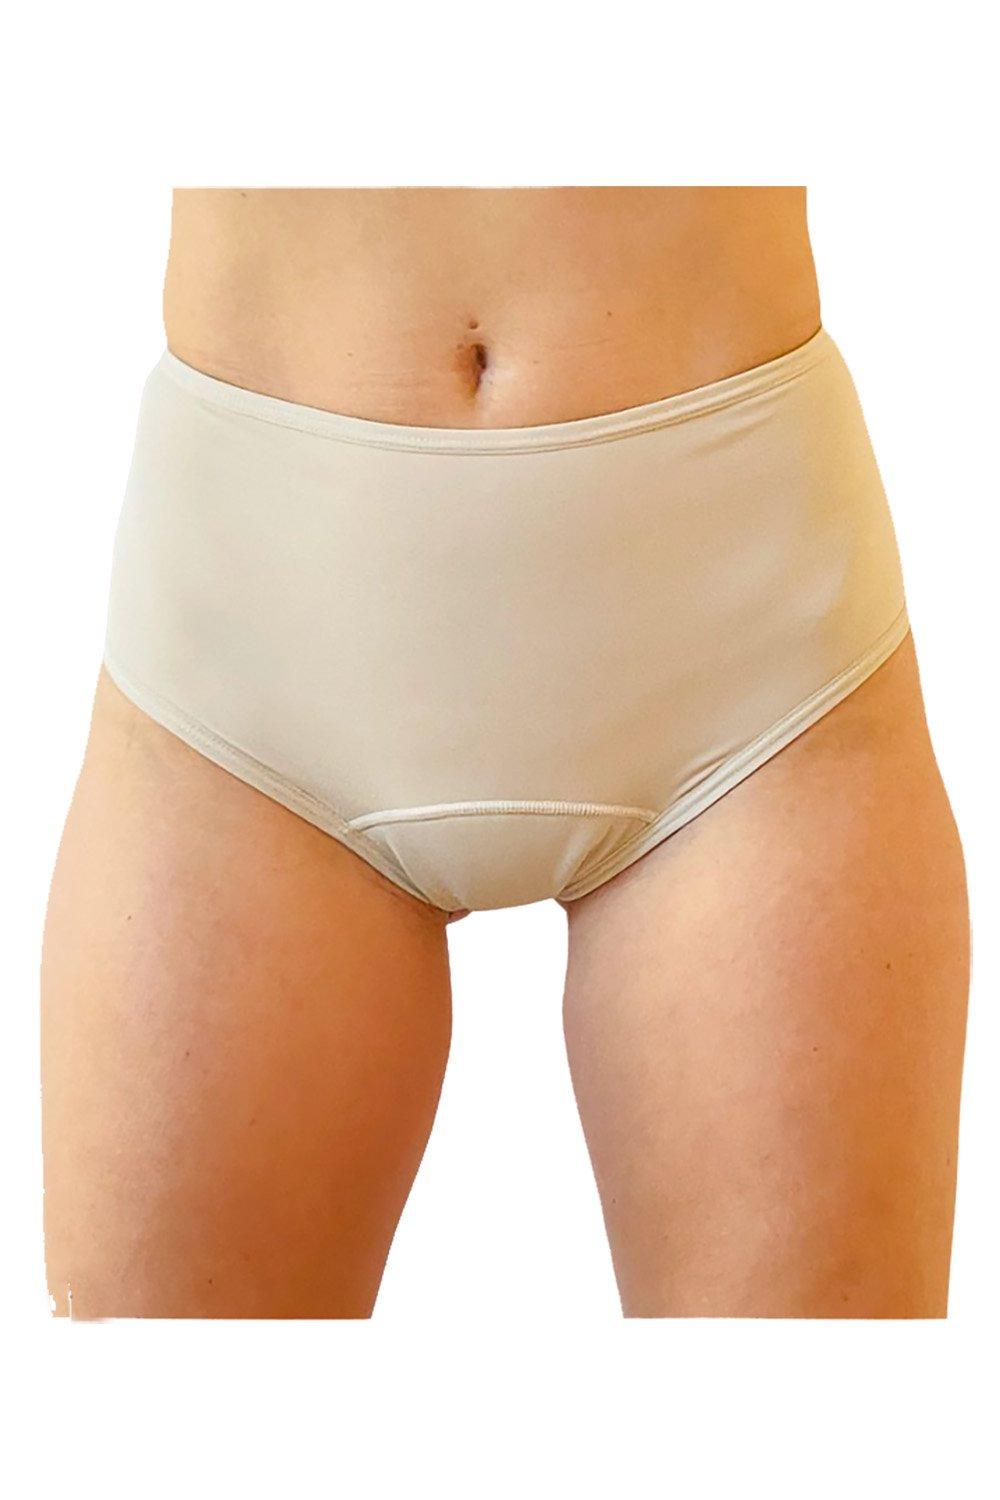 NIXI Body Underwear, Sporty High Waist